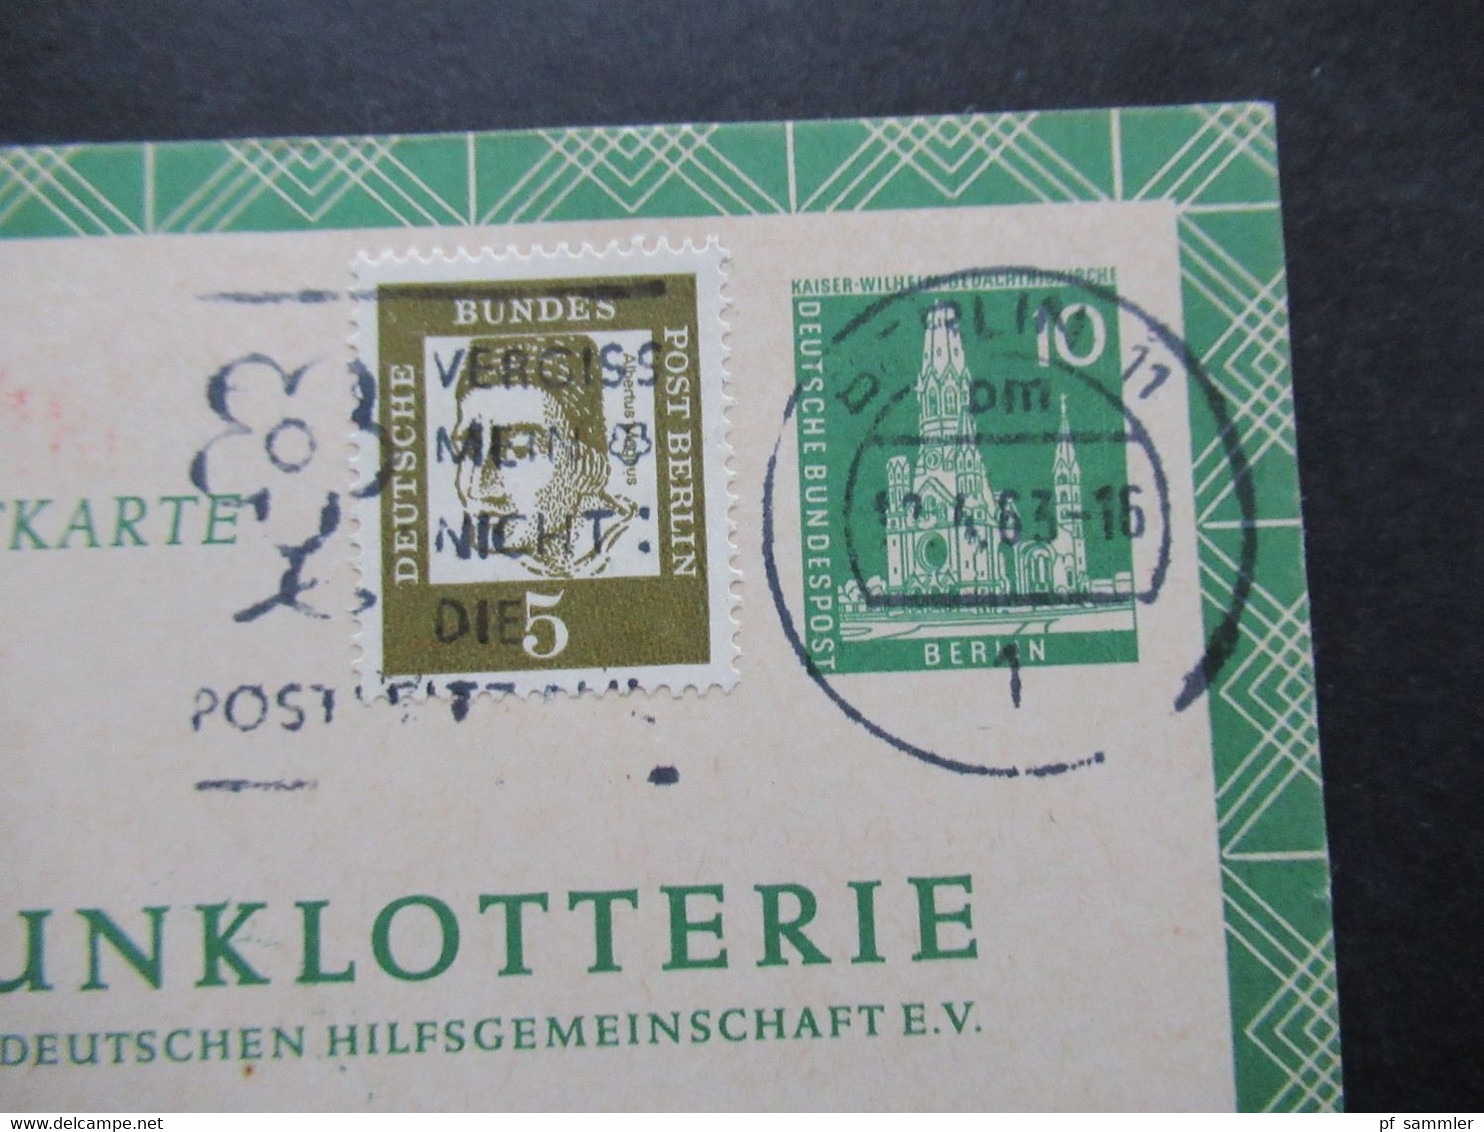 Berlin 1961 Funklotterie Postkarte FP 5 Mit Zusatzfrankatur Bedeutende Deutsche Sonderfrage Struwelpeter - Covers & Documents